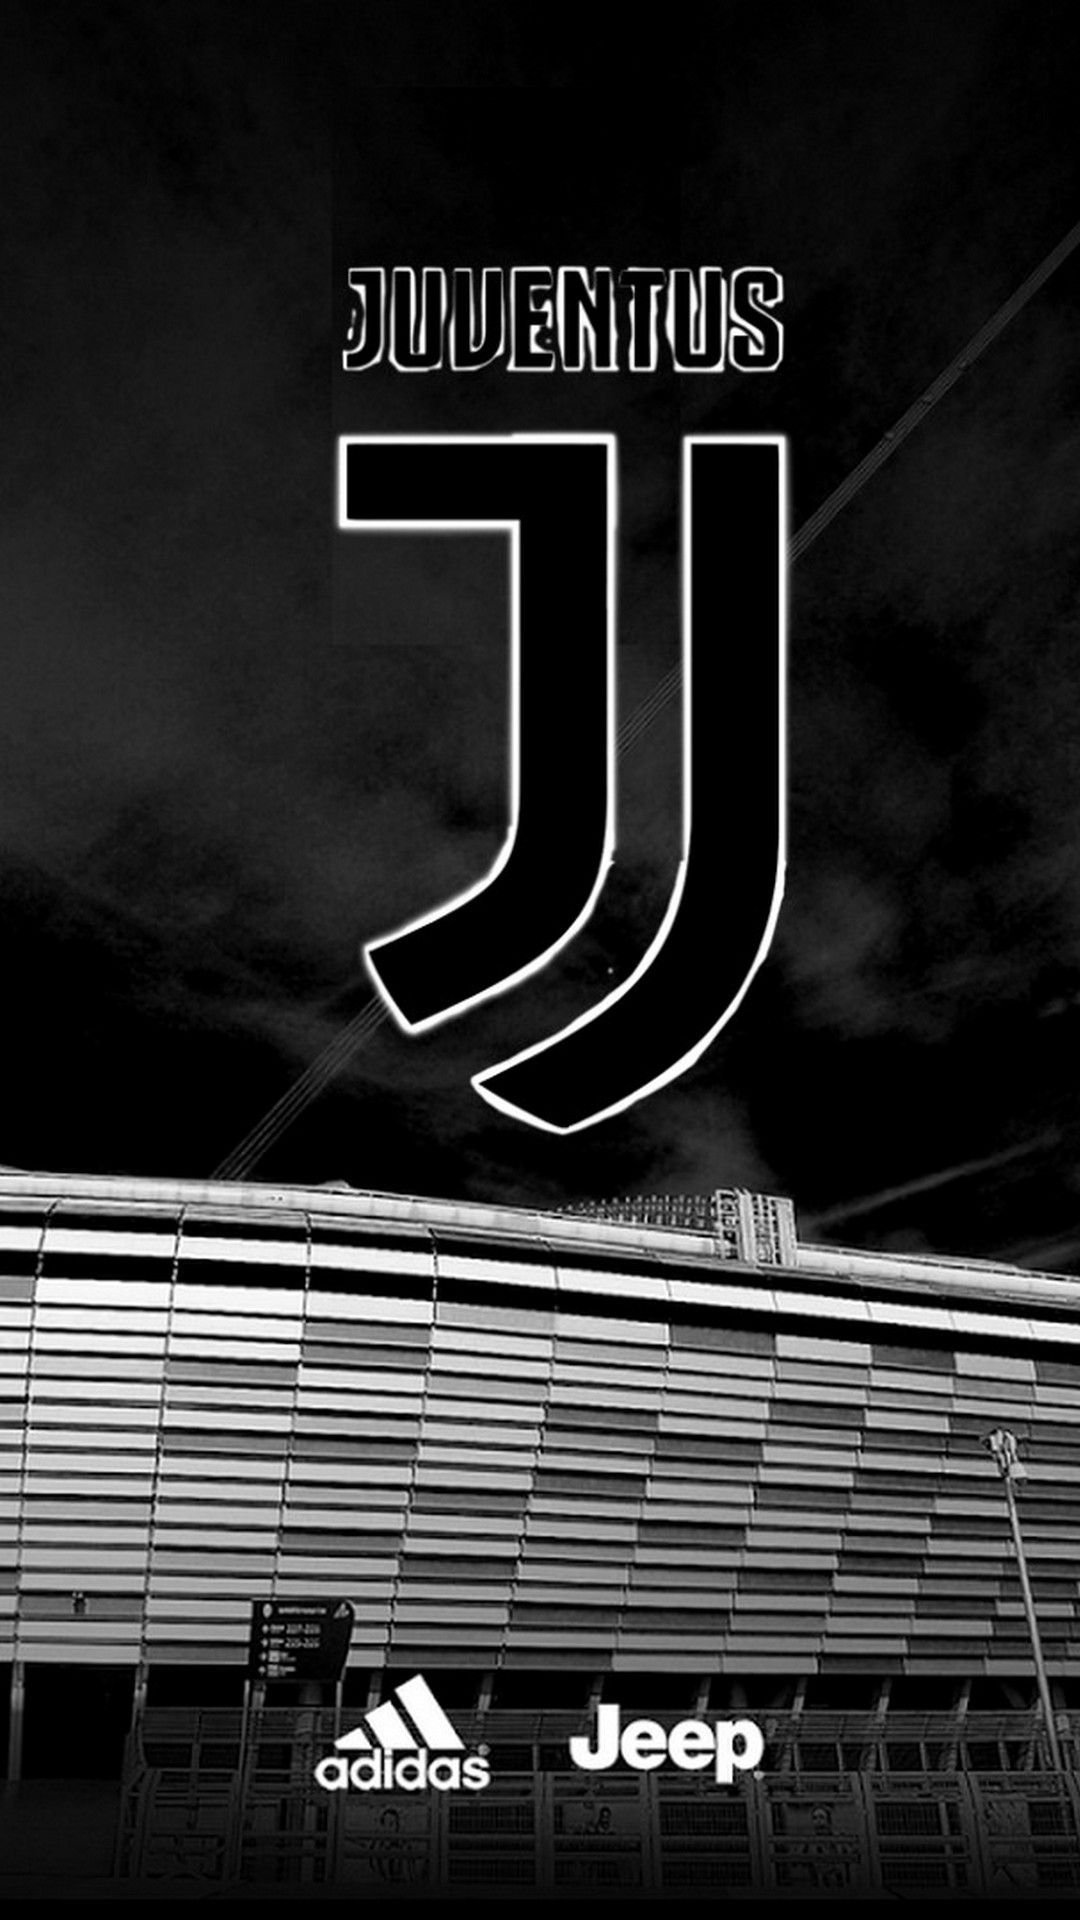 Adidas Juventus Wallpapers on WallpaperDog